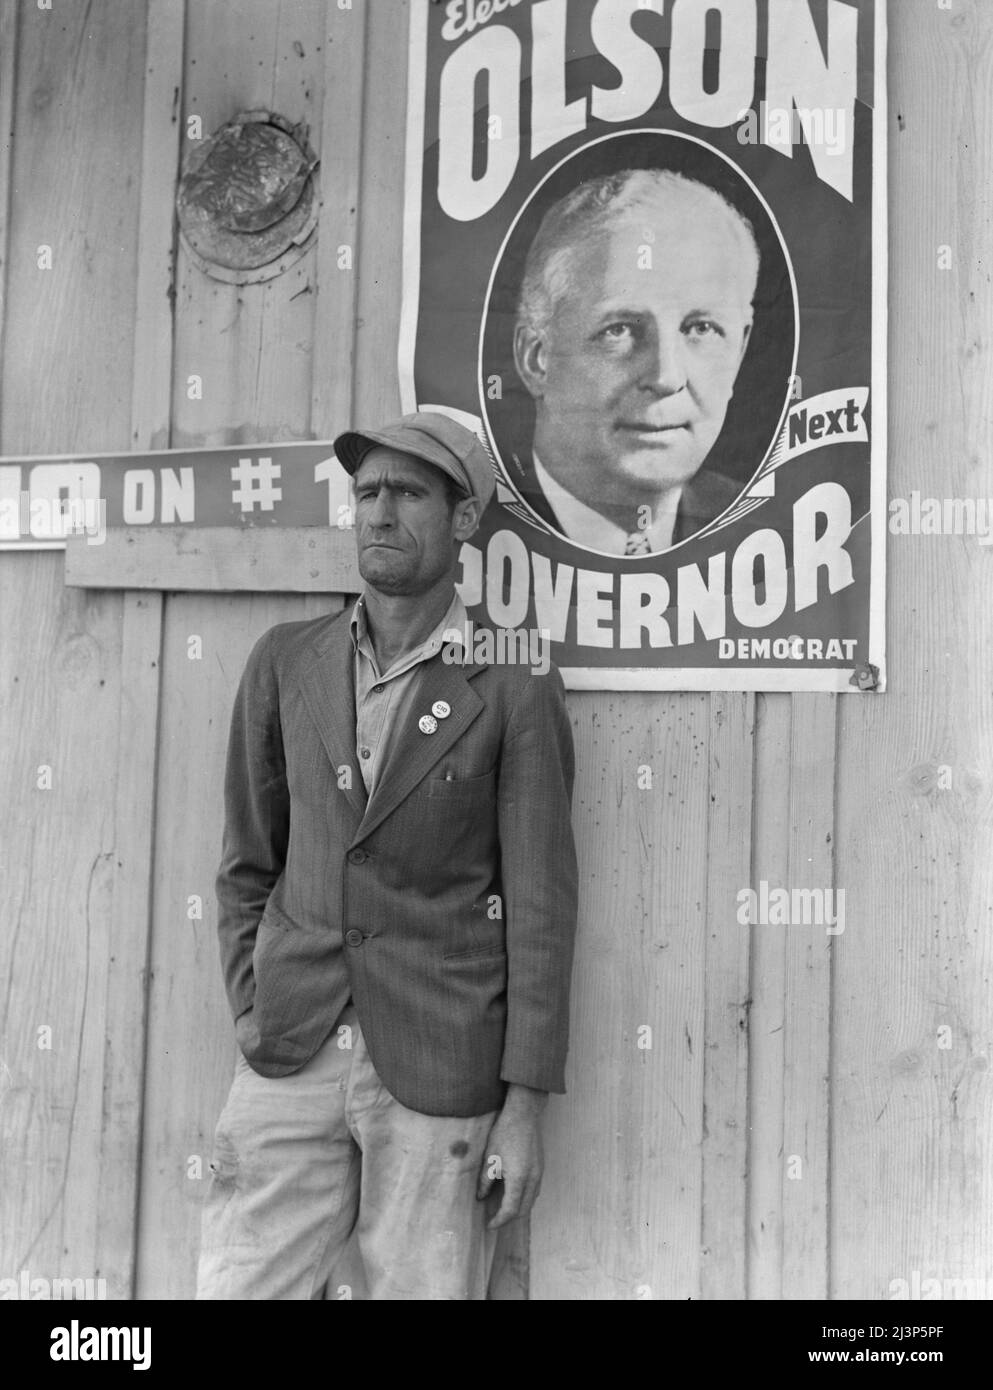 Operaio migratorio, leader dello sciopero del cotone dell'ottobre 1938, che si è svolto poco prima delle elezioni. Kern County, California. [Poster raffigurante Culbert Olson, eletto Governatore della California]. Foto Stock